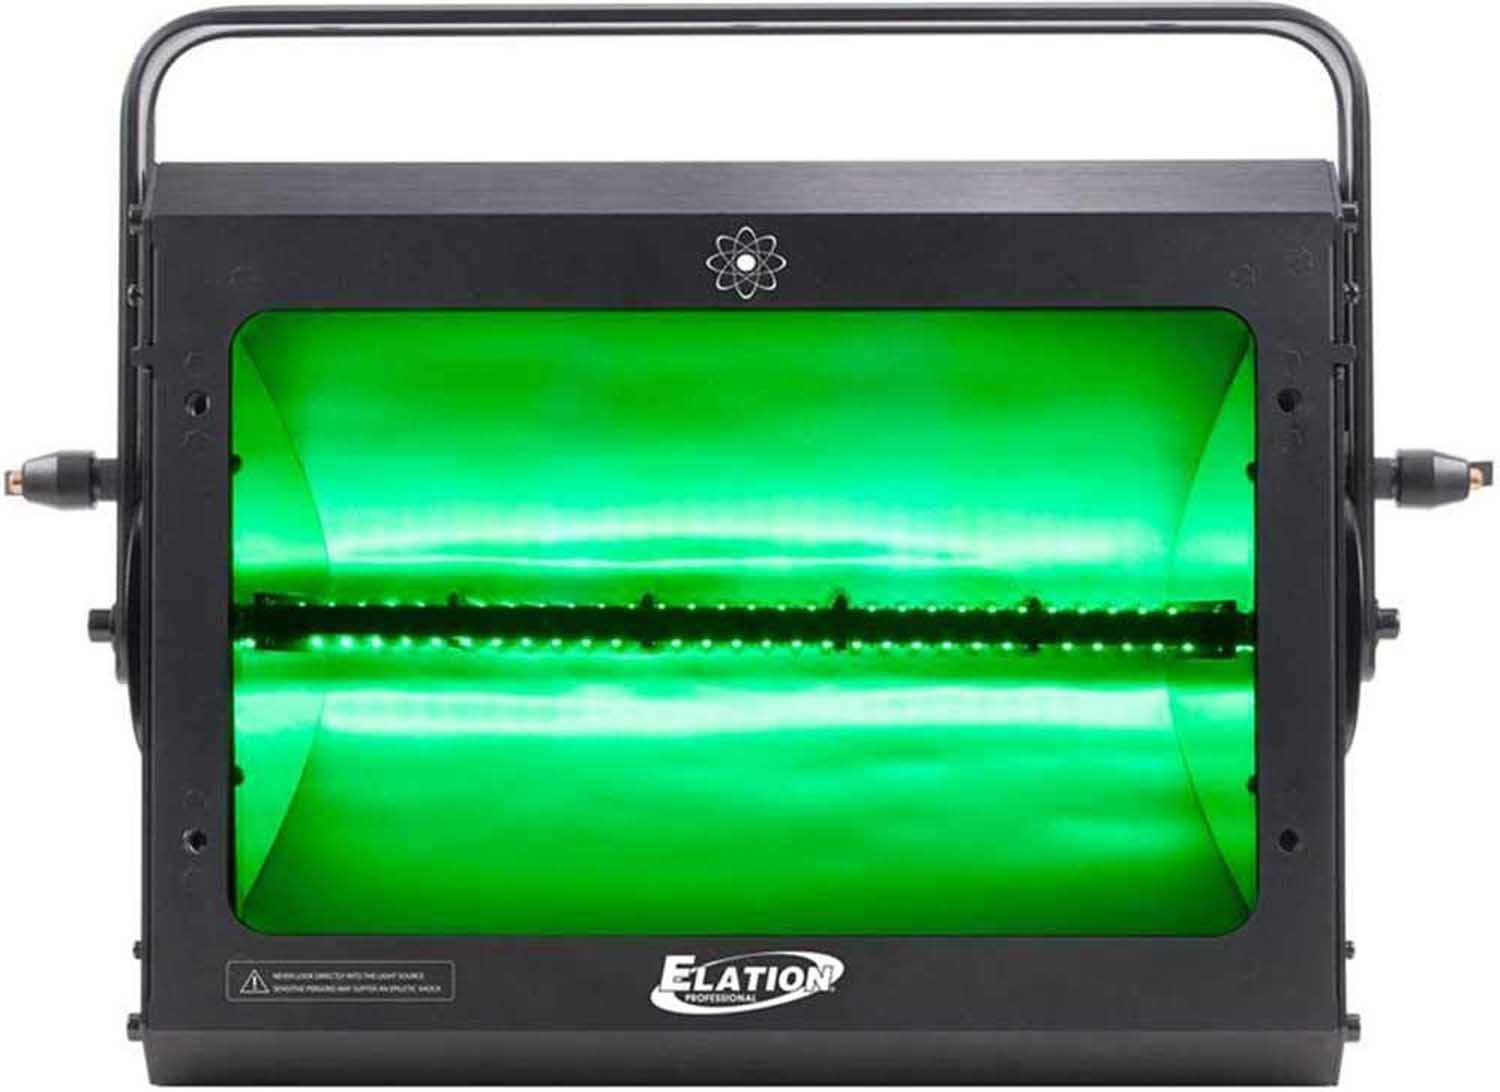 Elation Protron 3K Color LED Strobe with 4 DMX Channel Modes - Hollywood DJ